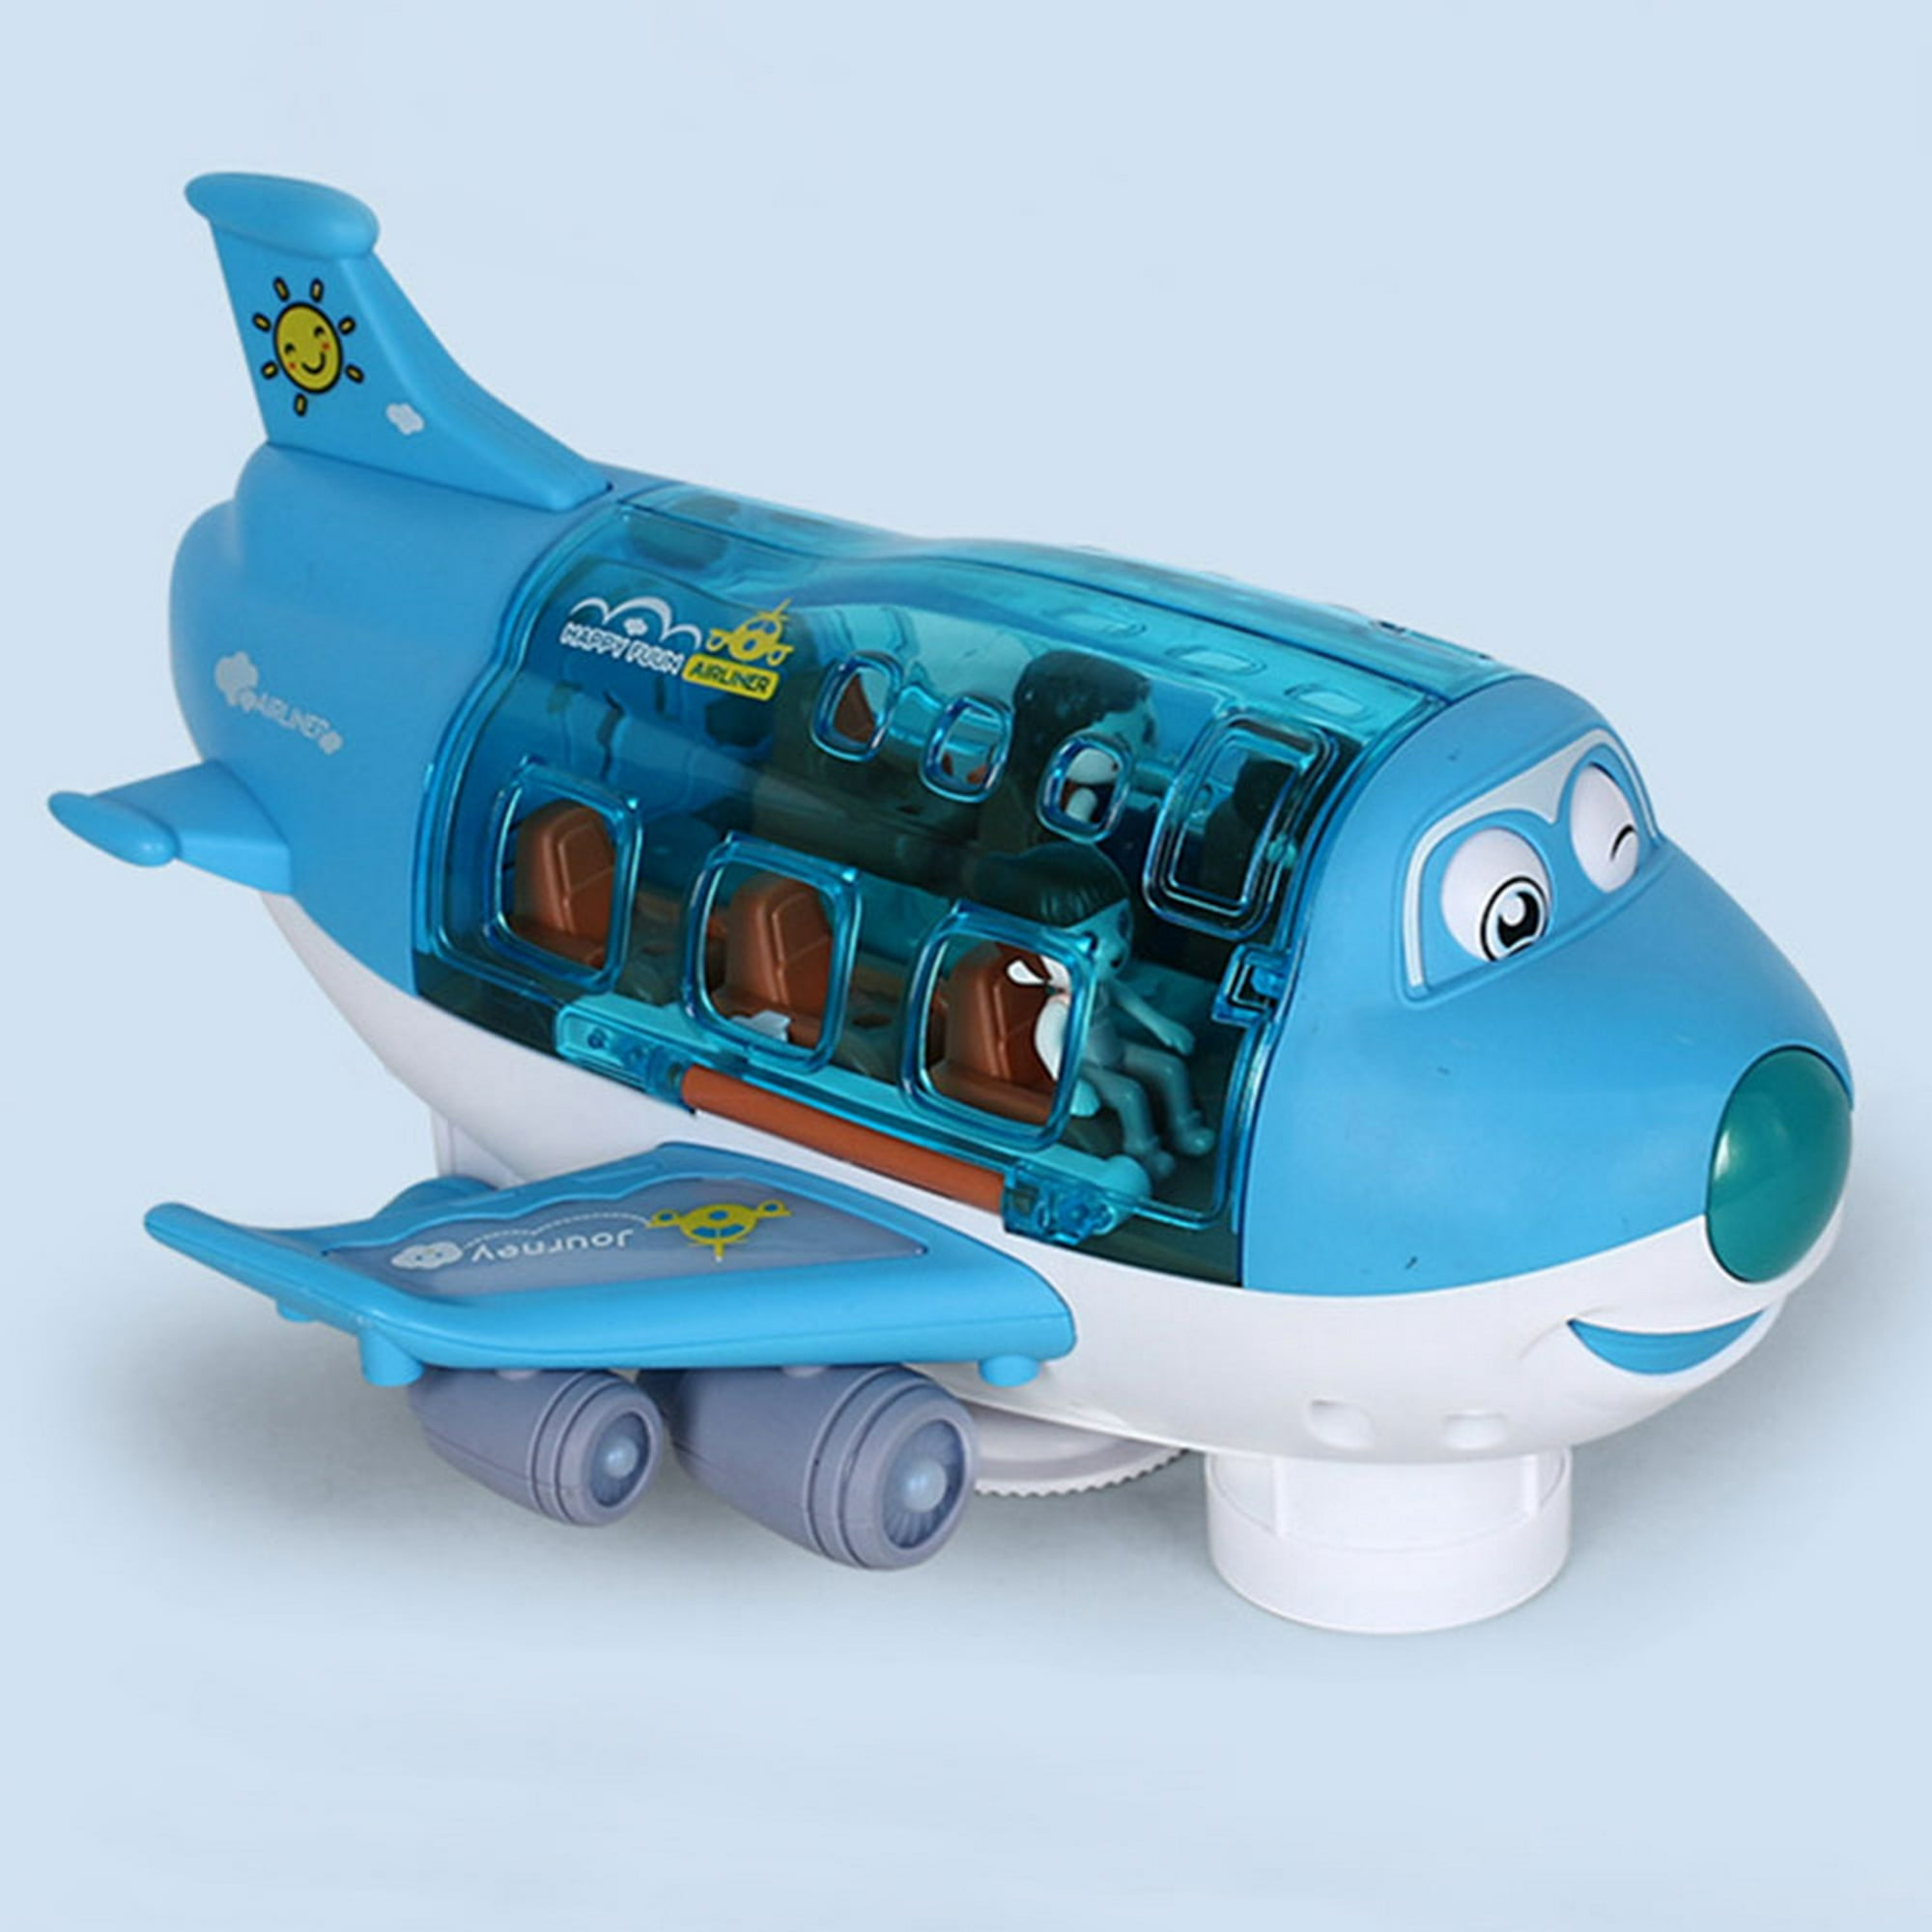  Juguetes para niños de 3 años, juguetes para niños pequeños,  juego de juguetes de avión con 4 autos de construcción, juguetes para niños,  aviones de transporte con luces y sonidos, cumpleaños